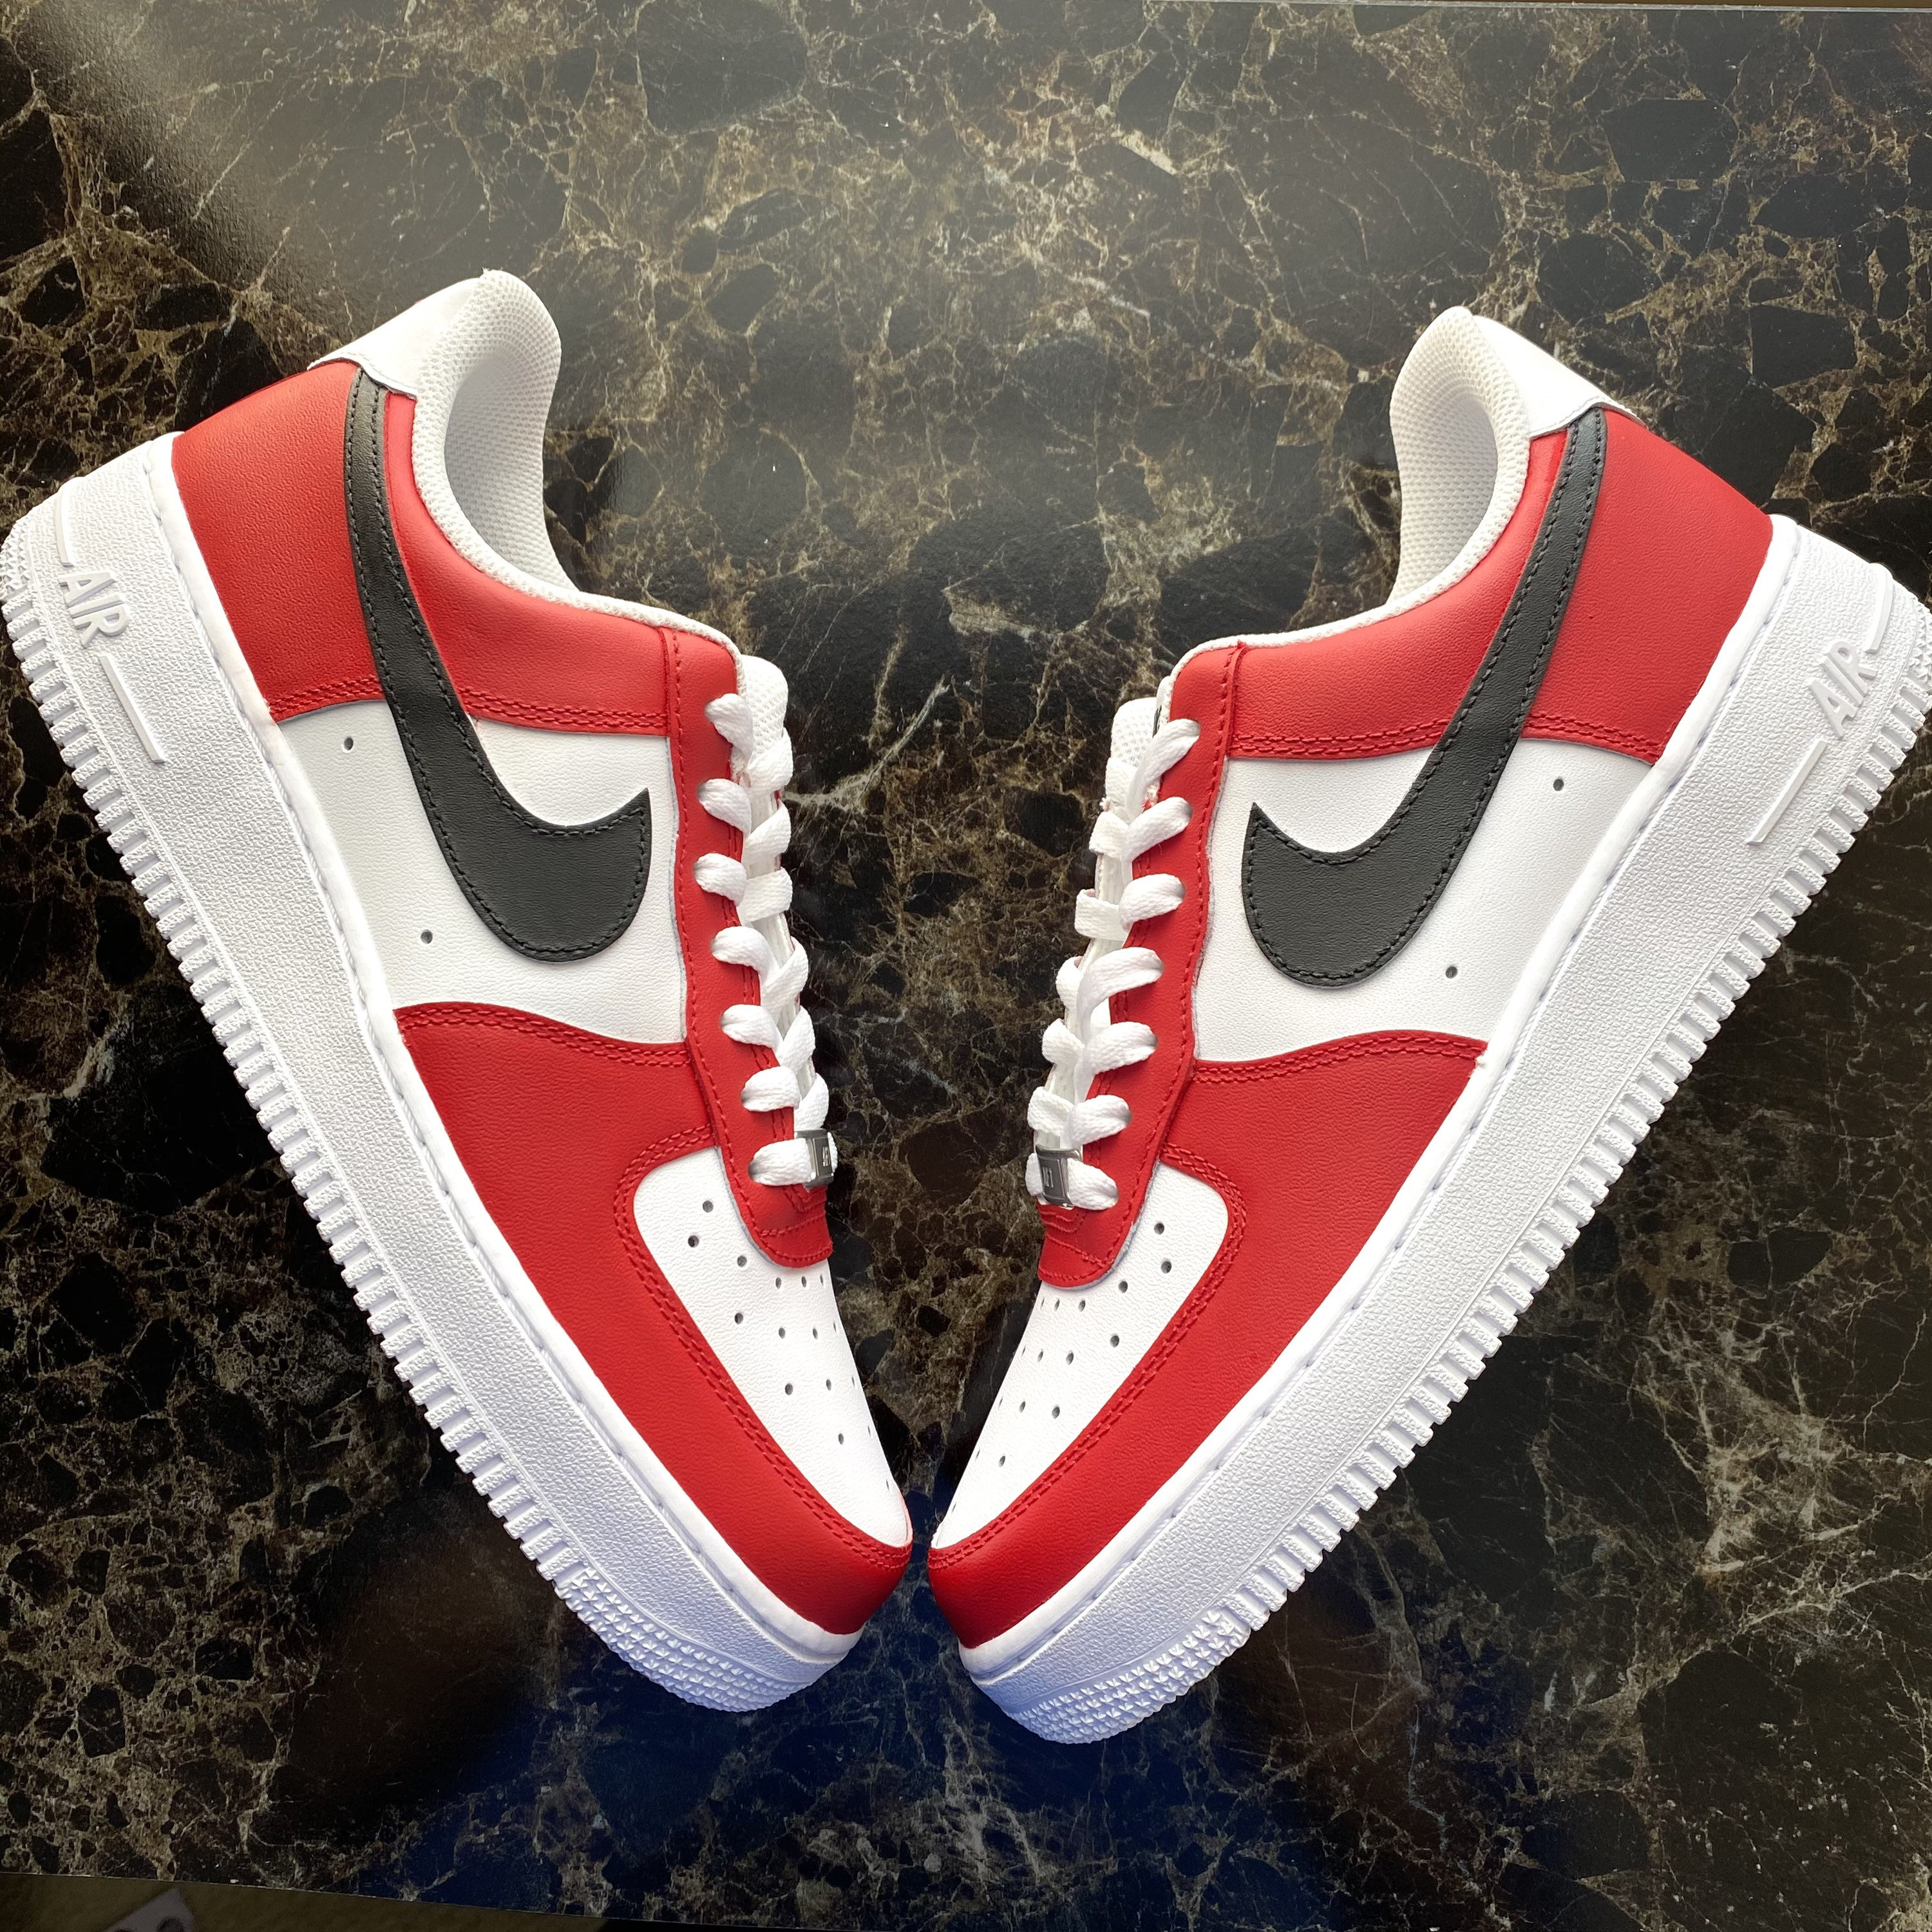 Nike Force 1 Custom Blood Red Sneakers Men - Etsy